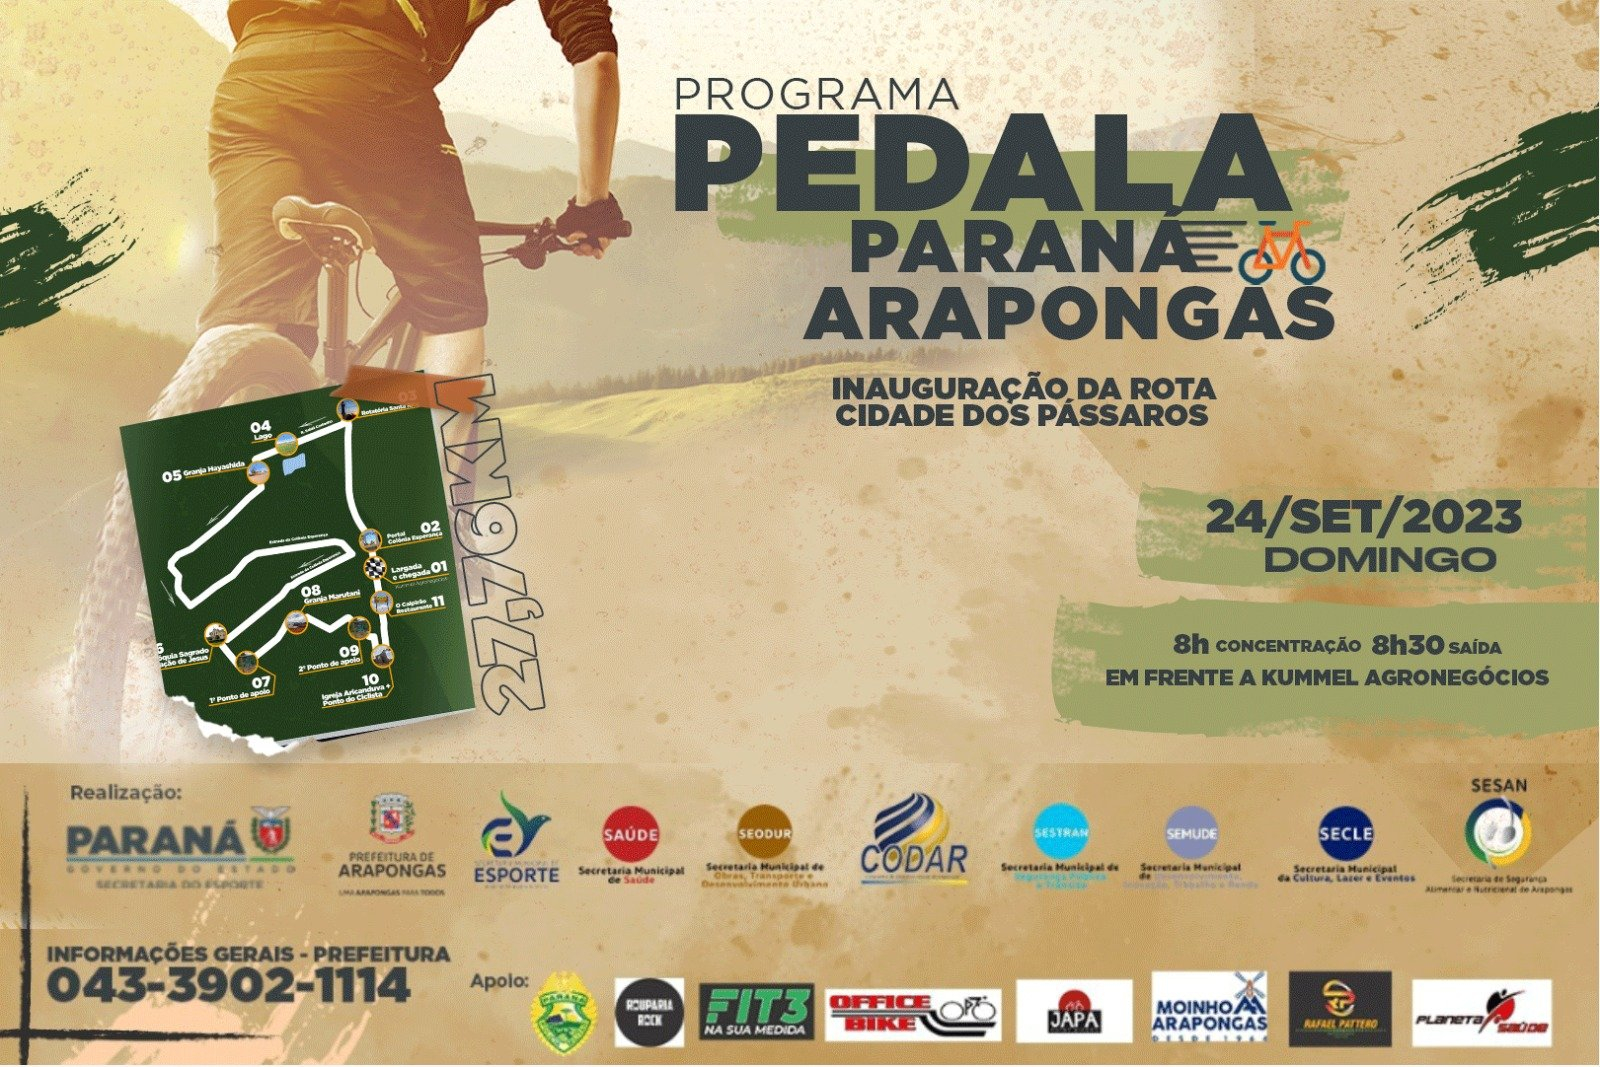 Programa Pedala Paraná Arapongas vai inaugurar rota Cidade dos Pássaros